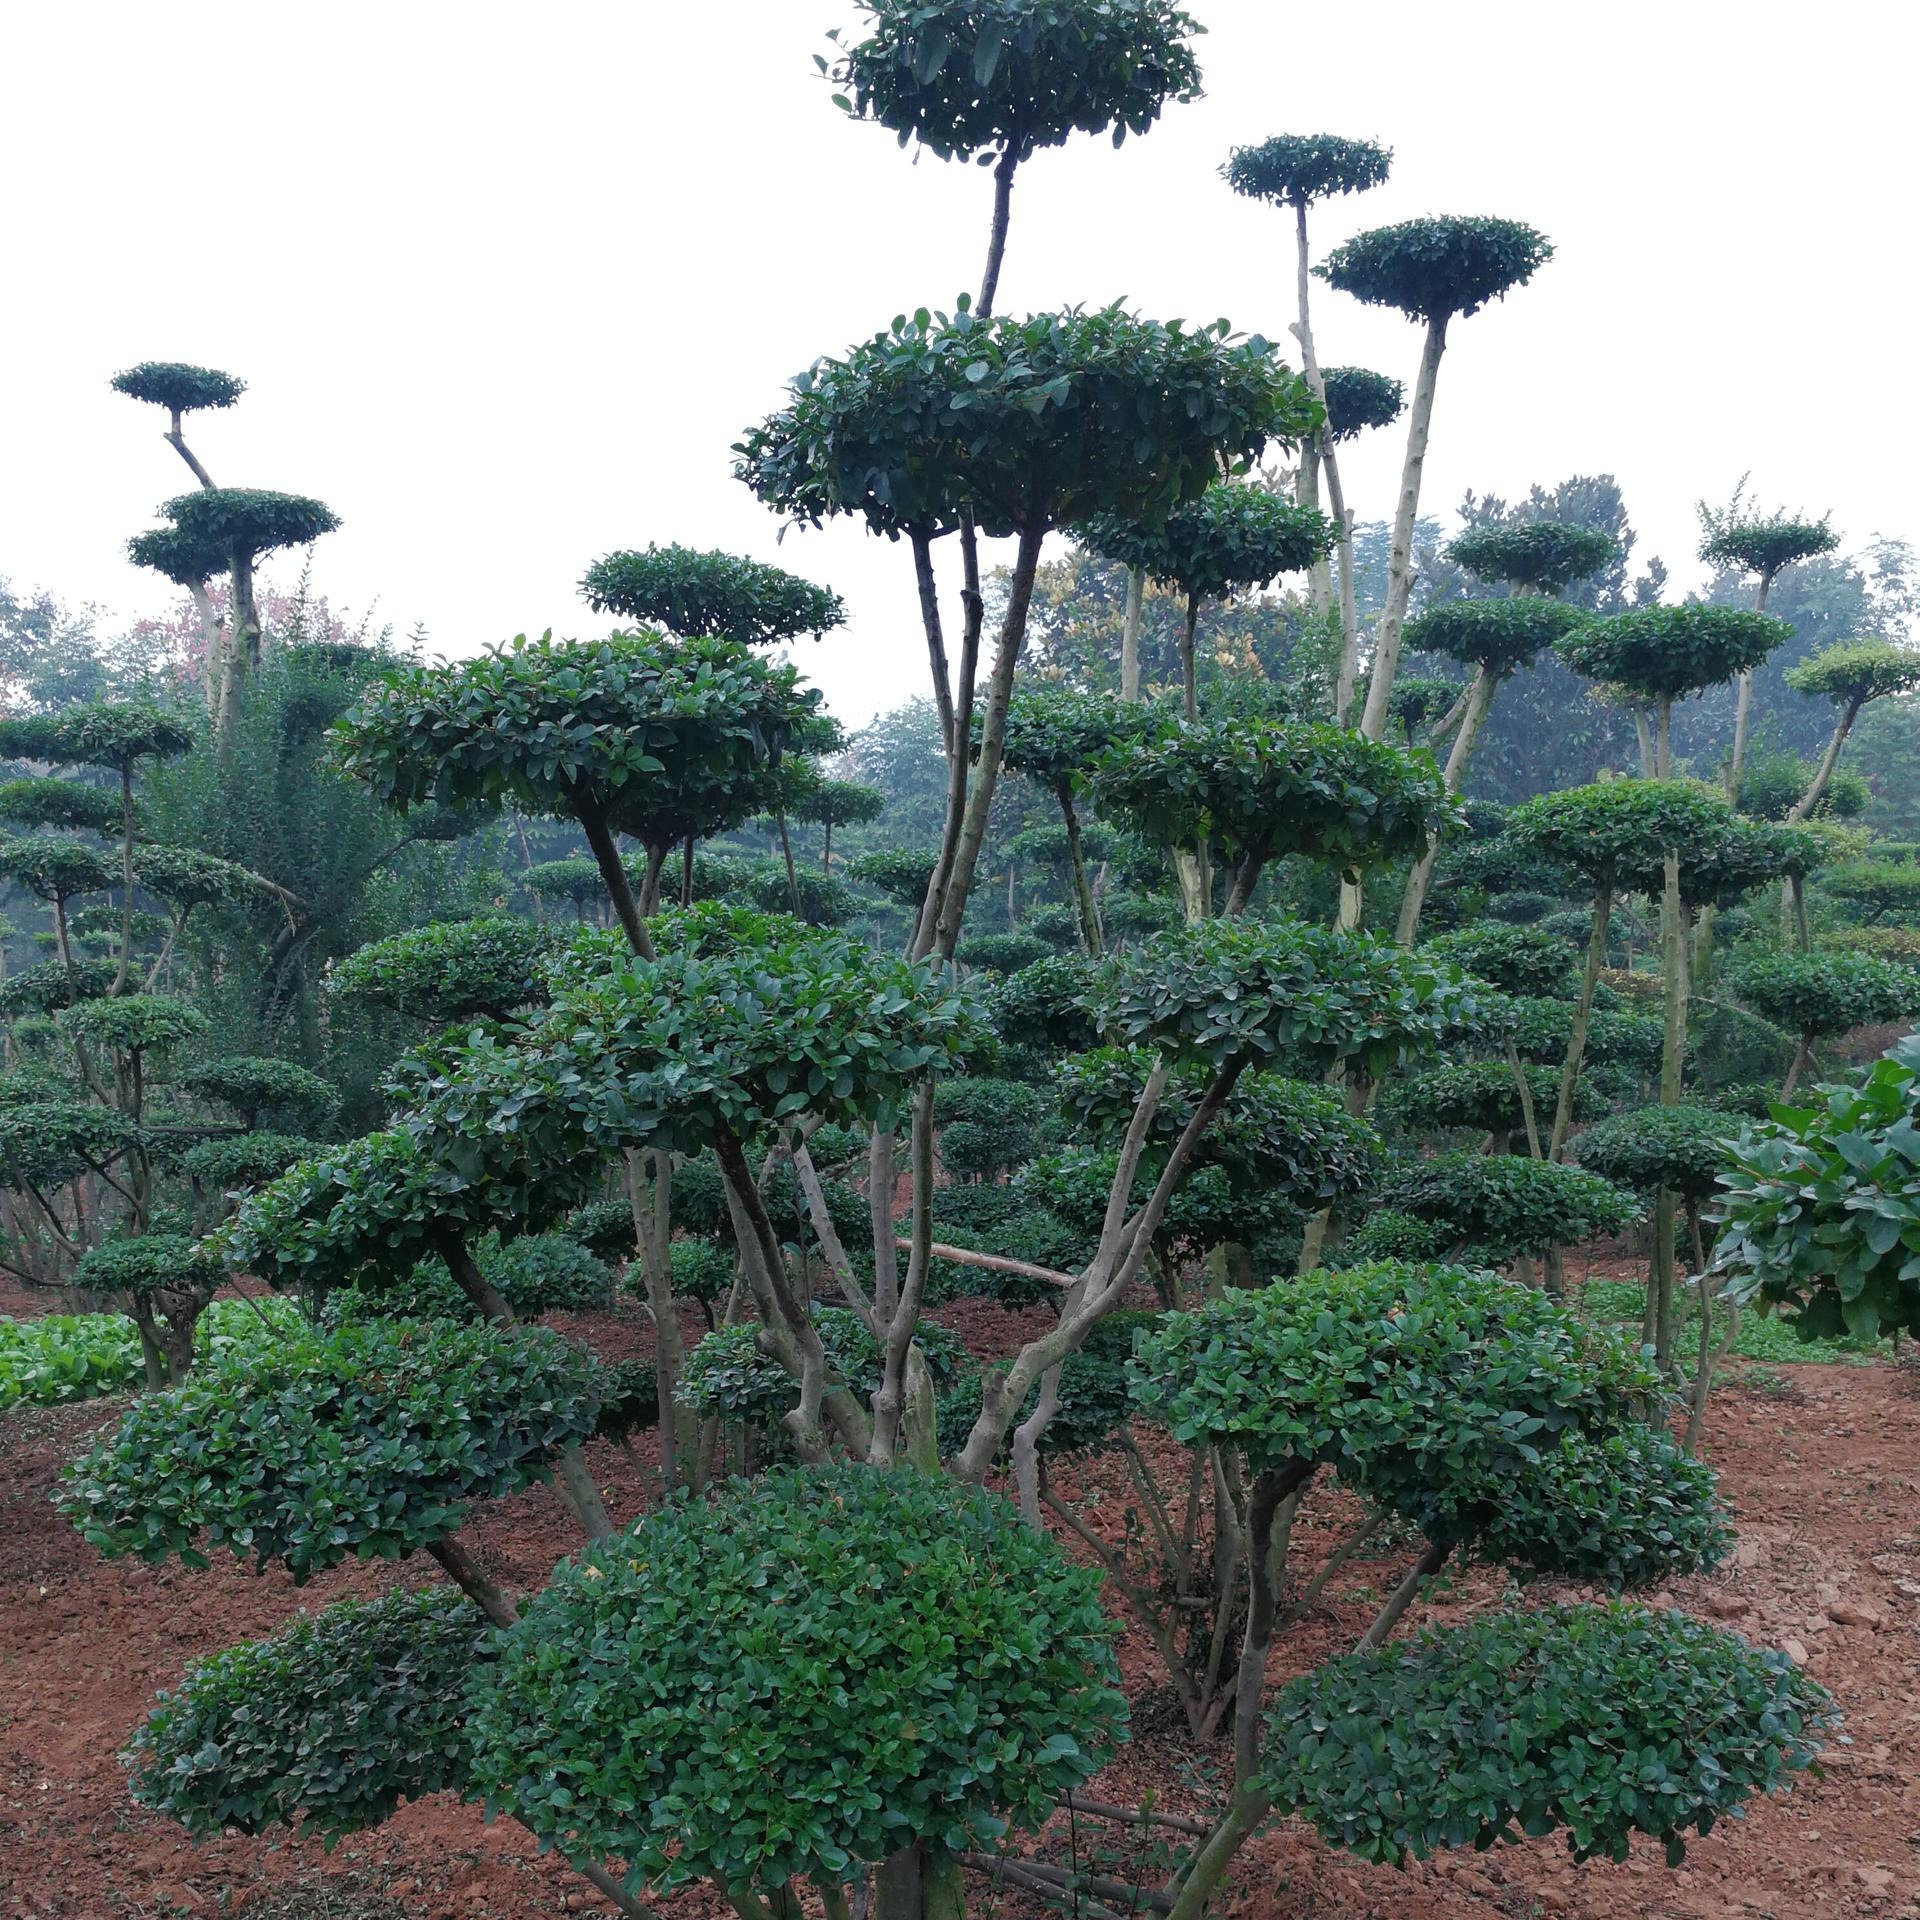 河南鄢陵县梦宇花木园销售2米高小叶女贞造型树可以在北方栽培